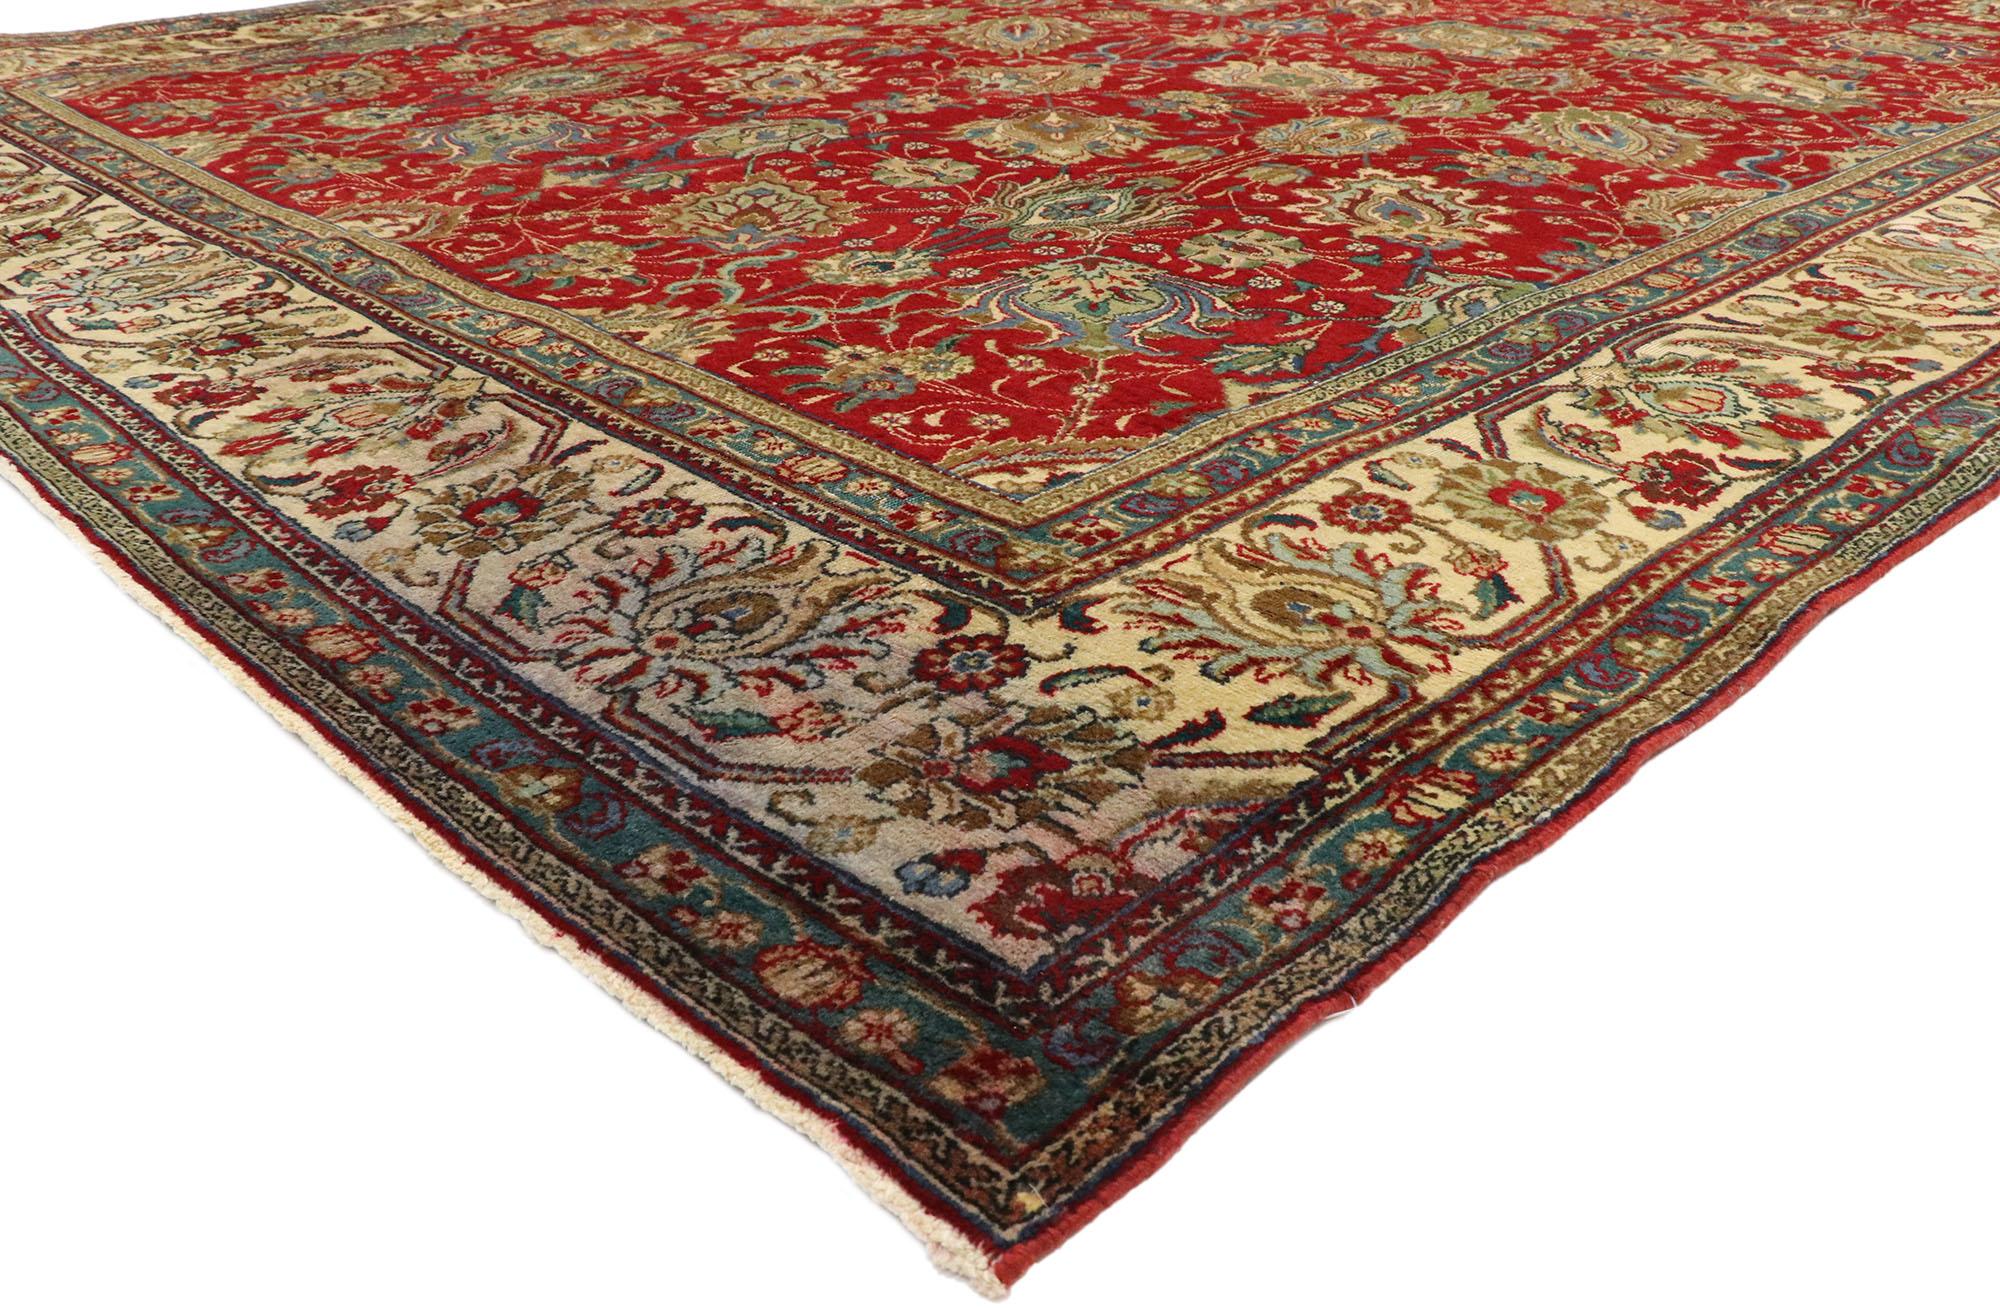 75593 tapis vintage Persan Tabriz Palace de style traditionnel colonial et fédéral. Ce tapis Tabriz persan vintage en laine noué à la main présente un motif Shah Abbas sur toute sa surface. Il est entouré d'une bordure ivoire complémentaire flanquée